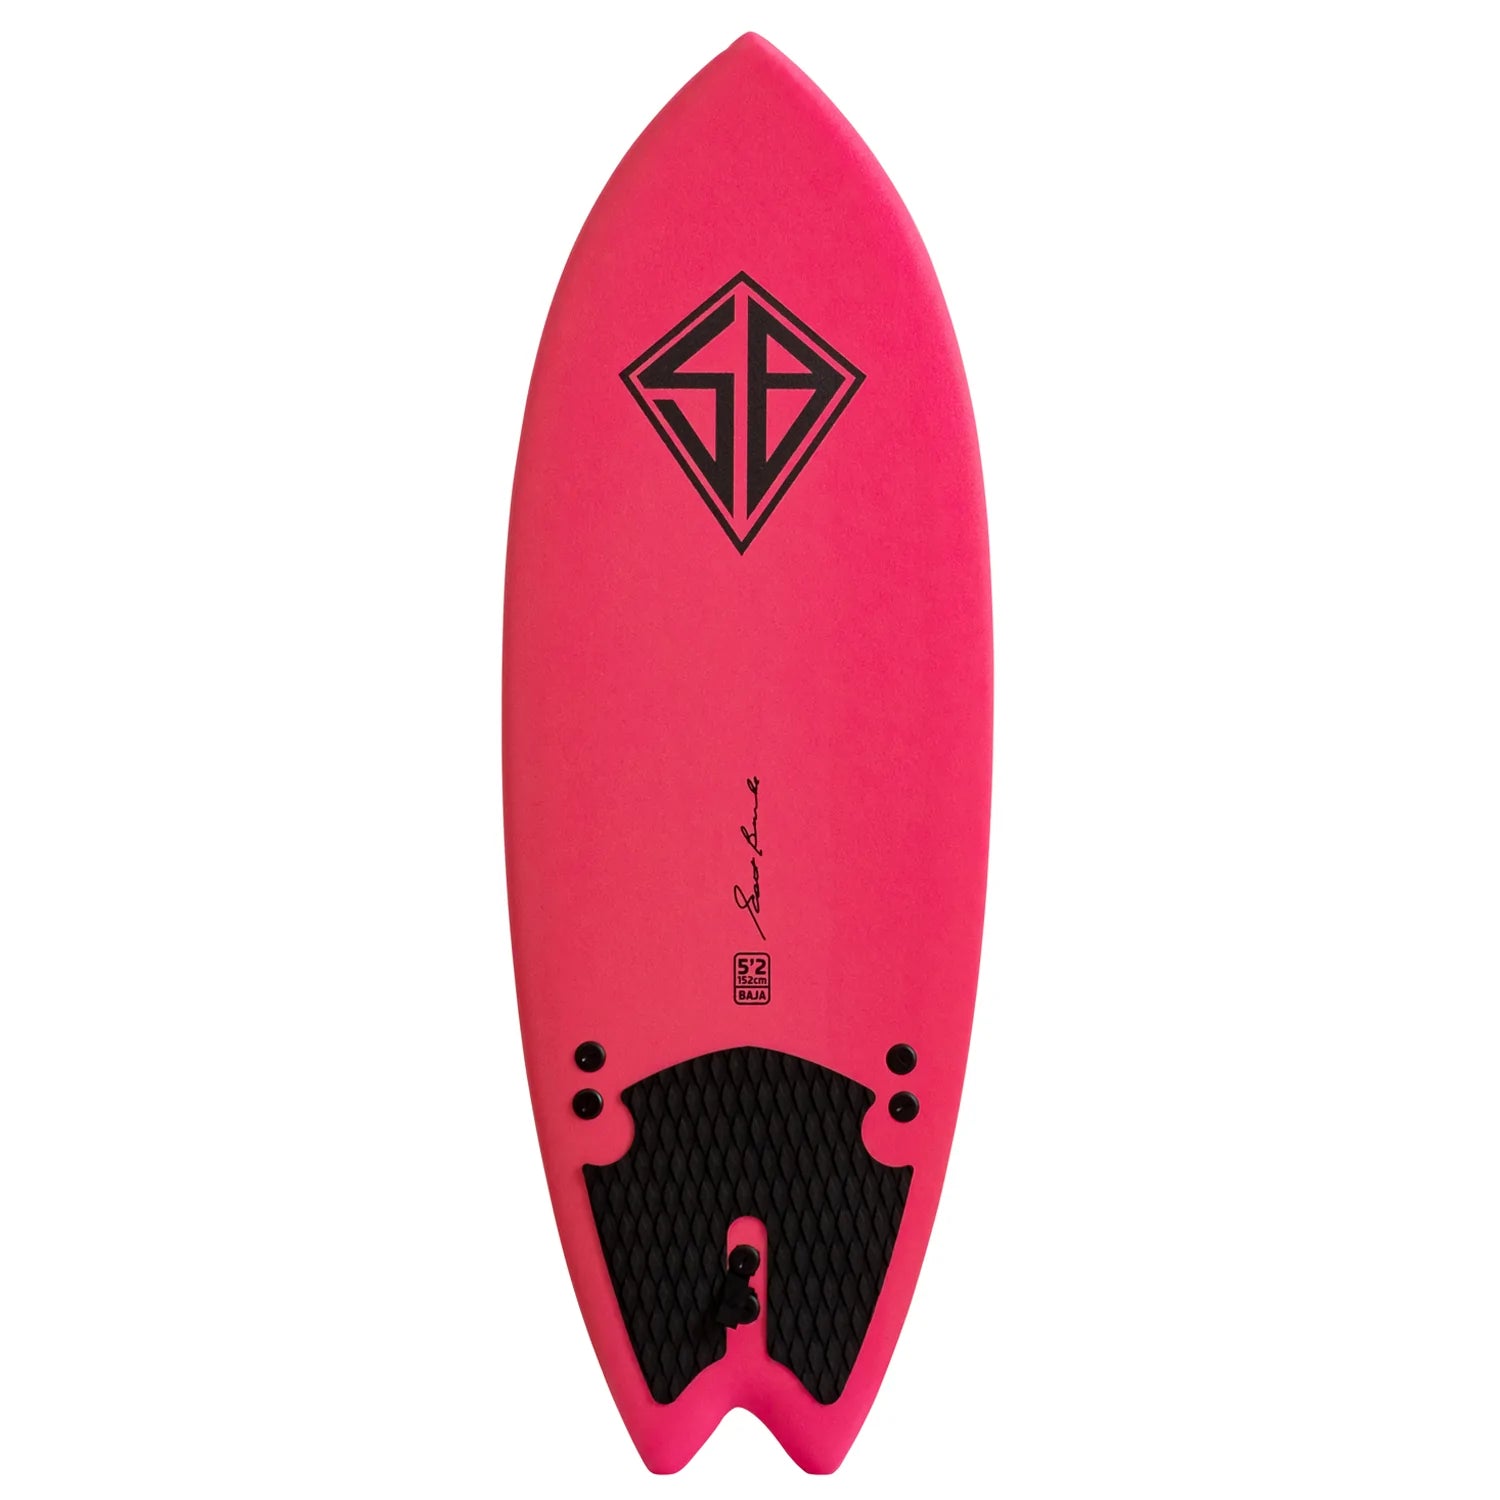 CBC - Tabla de surf de espuma - Softboard - 5'2 Baja Fish - Rosa / Rainbow Slick